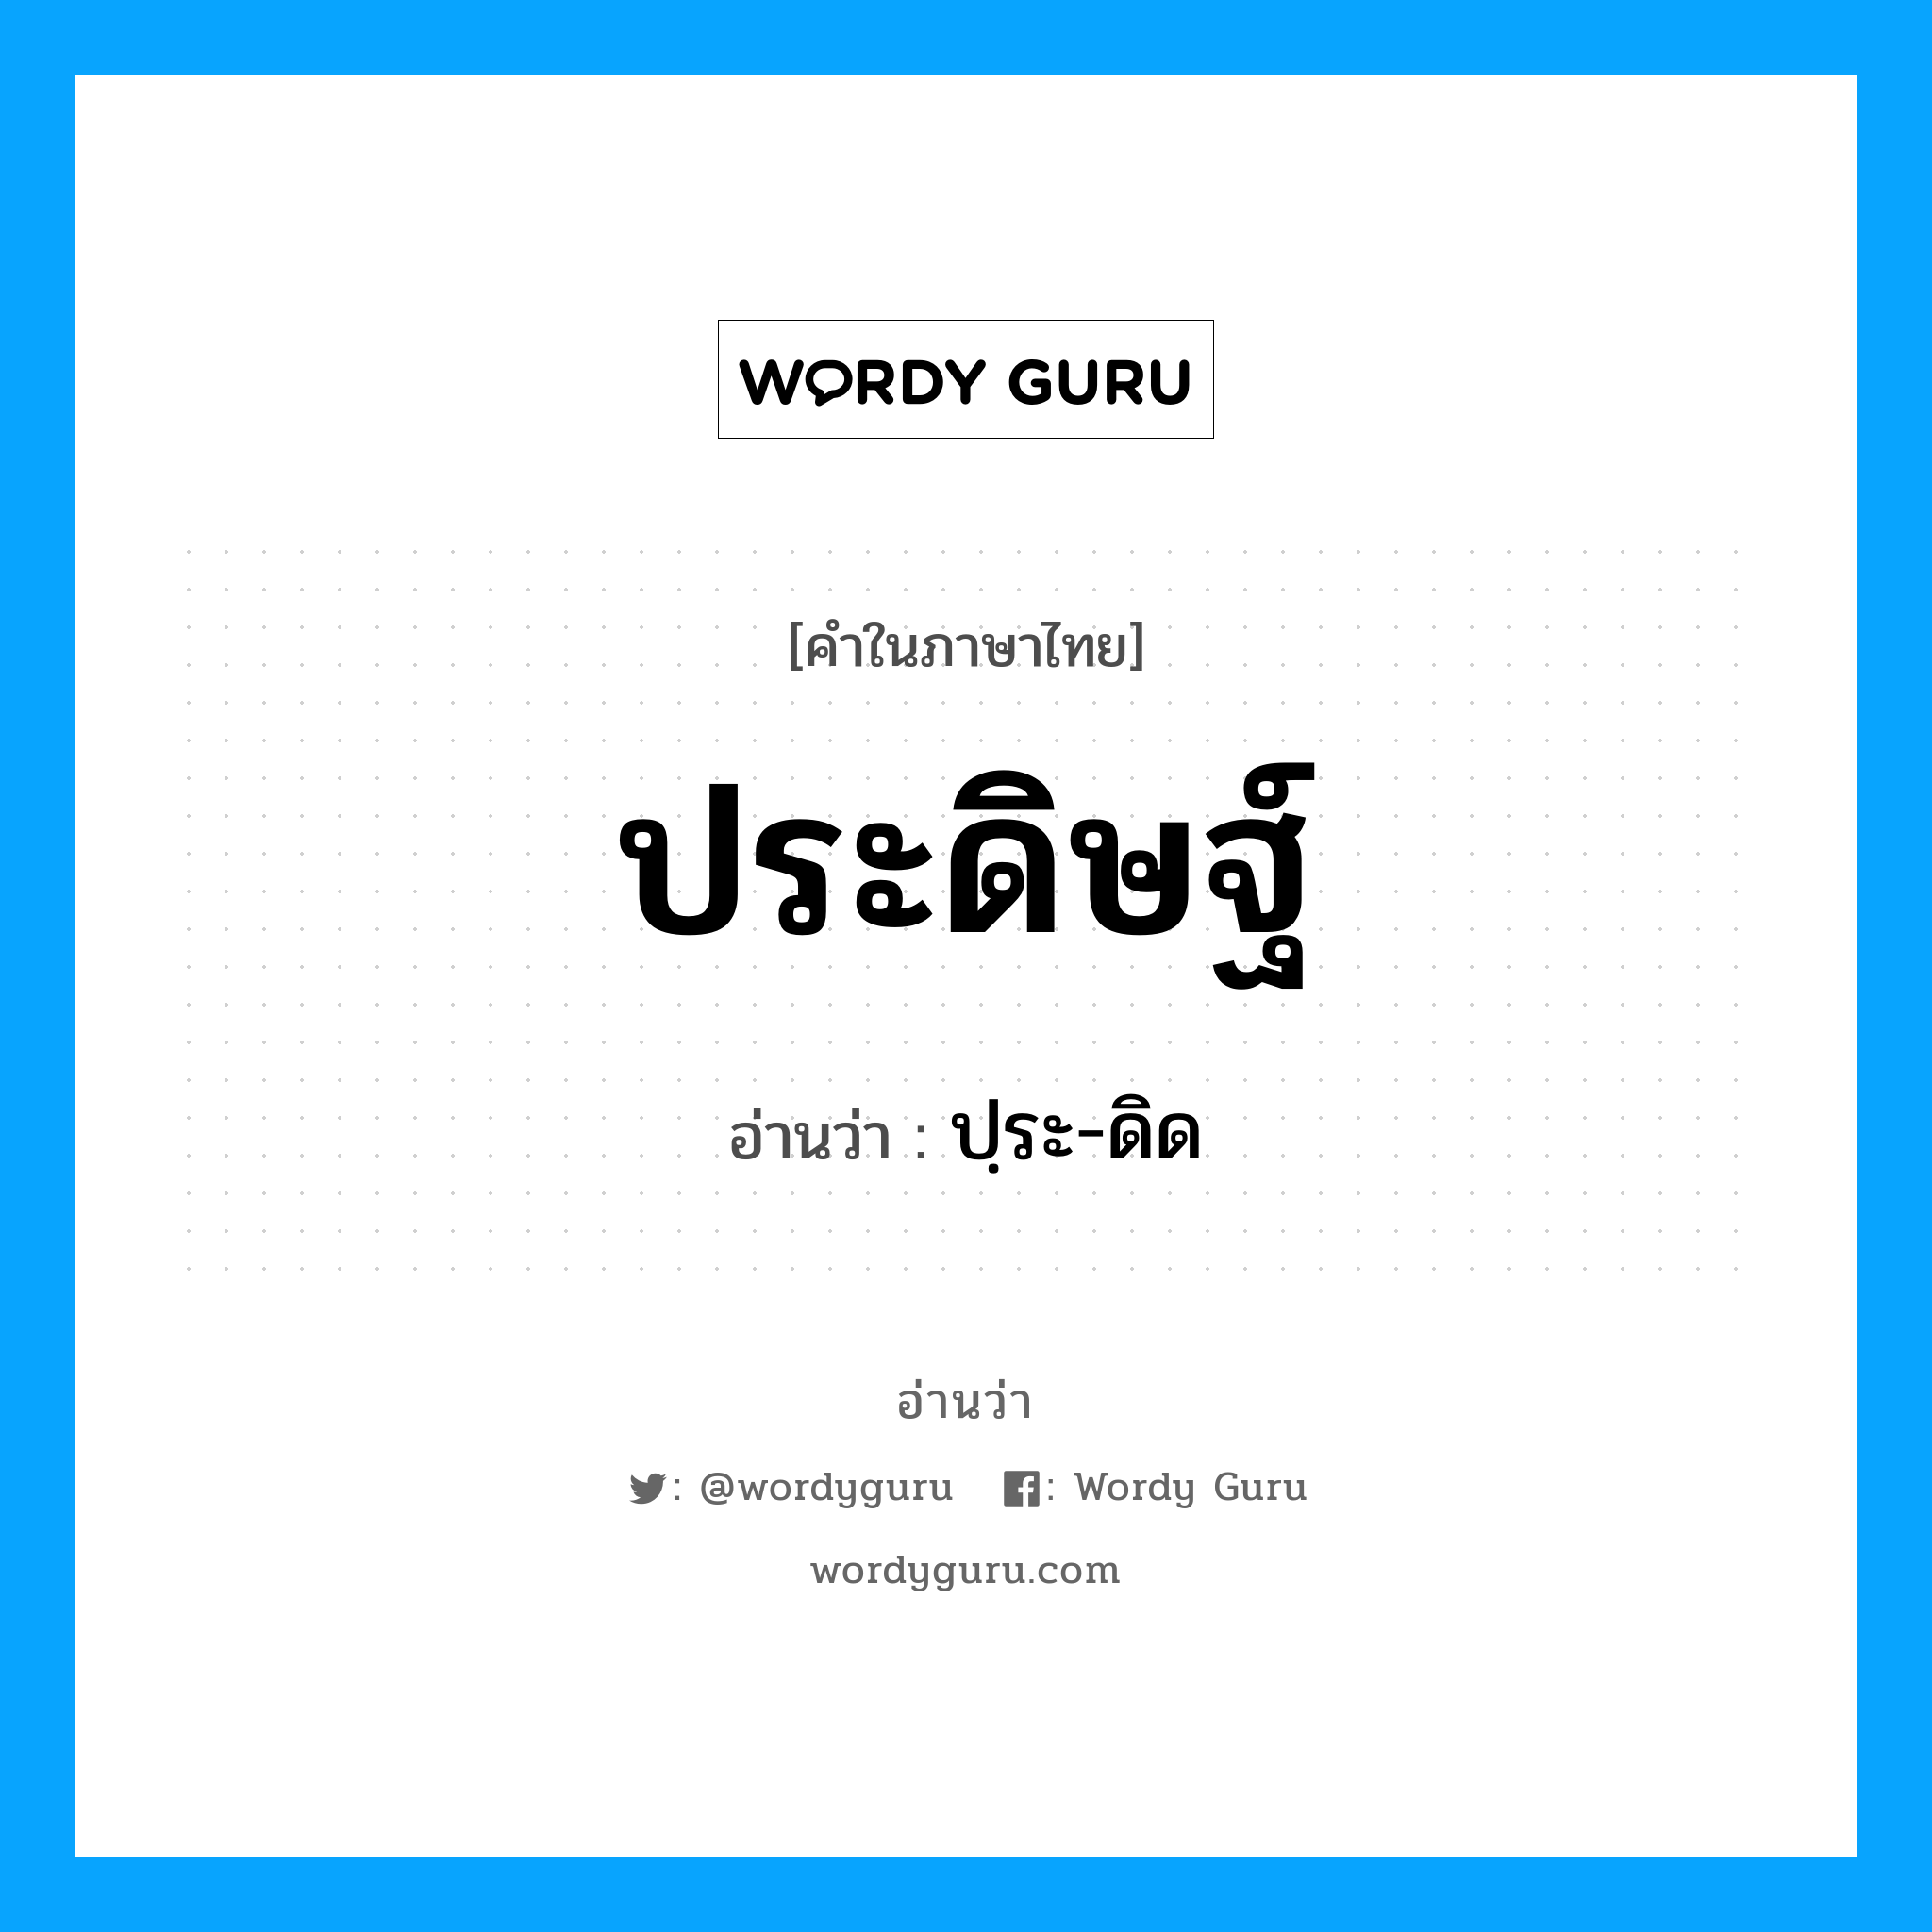 ปฺระ-ดิด เป็นคำอ่านของคำไหน?, คำในภาษาไทย ปฺระ-ดิด อ่านว่า ประดิษฐ์